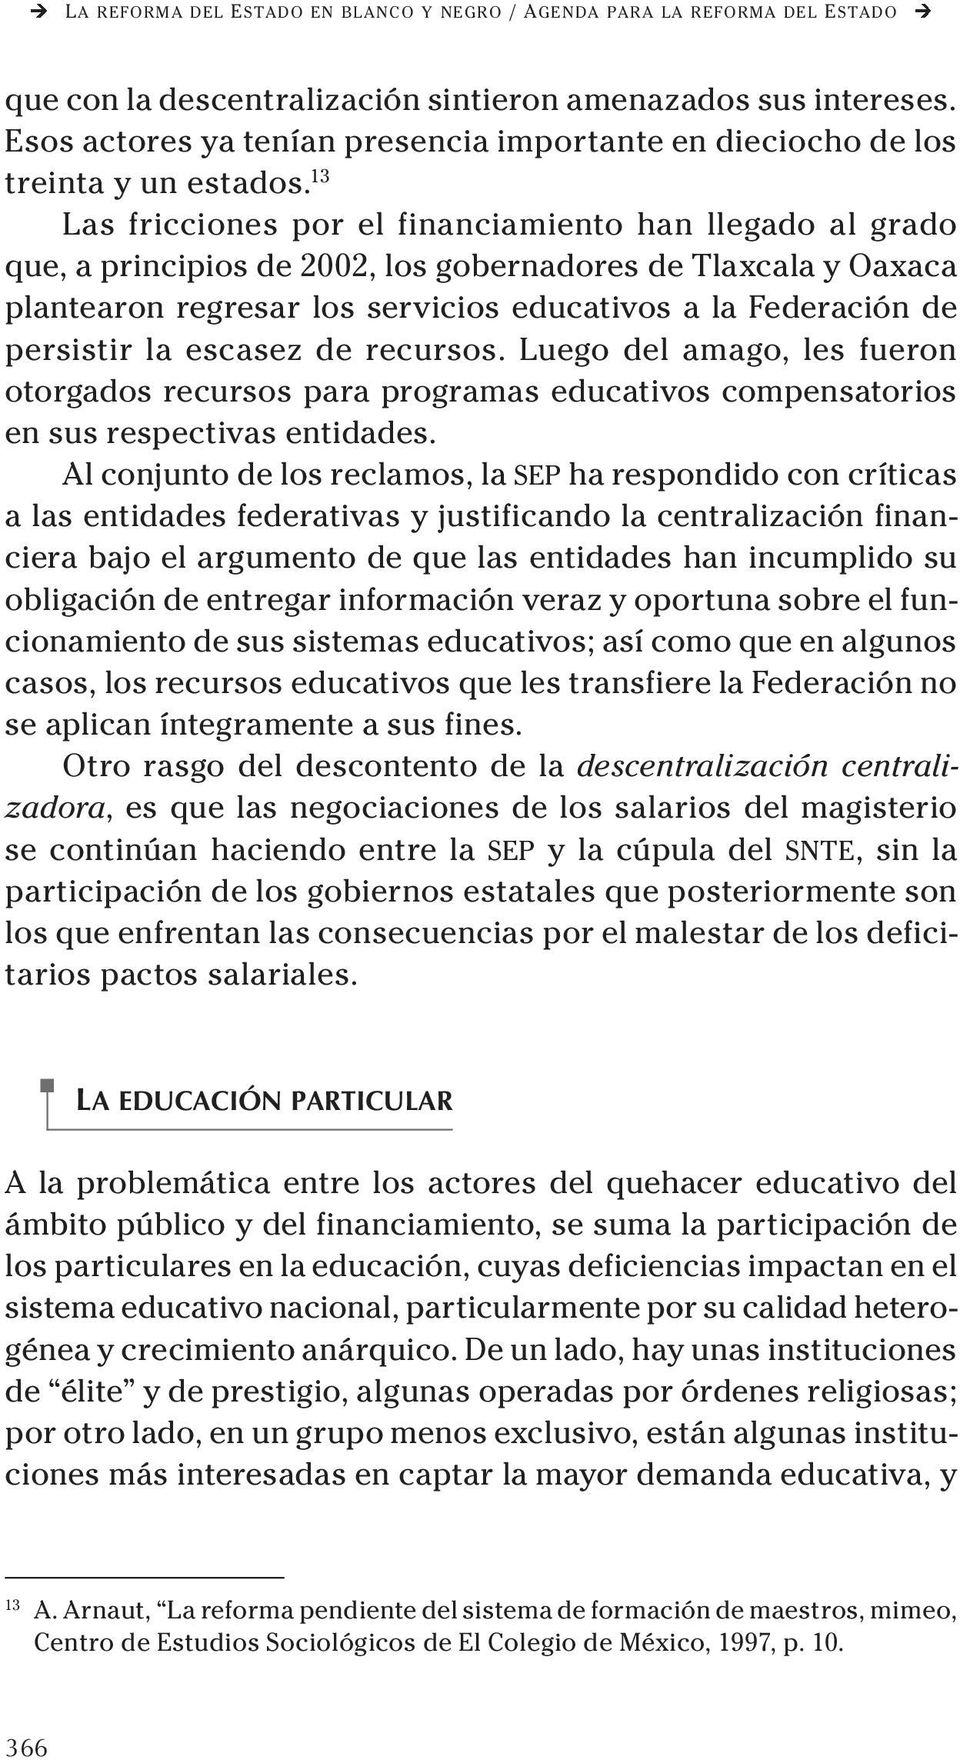 13 Las fricciones por el financiamiento han llegado al grado que, a principios de 2002, los gobernadores de Tlaxcala y Oaxaca plantearon regresar los servicios educativos a la Federación de persistir